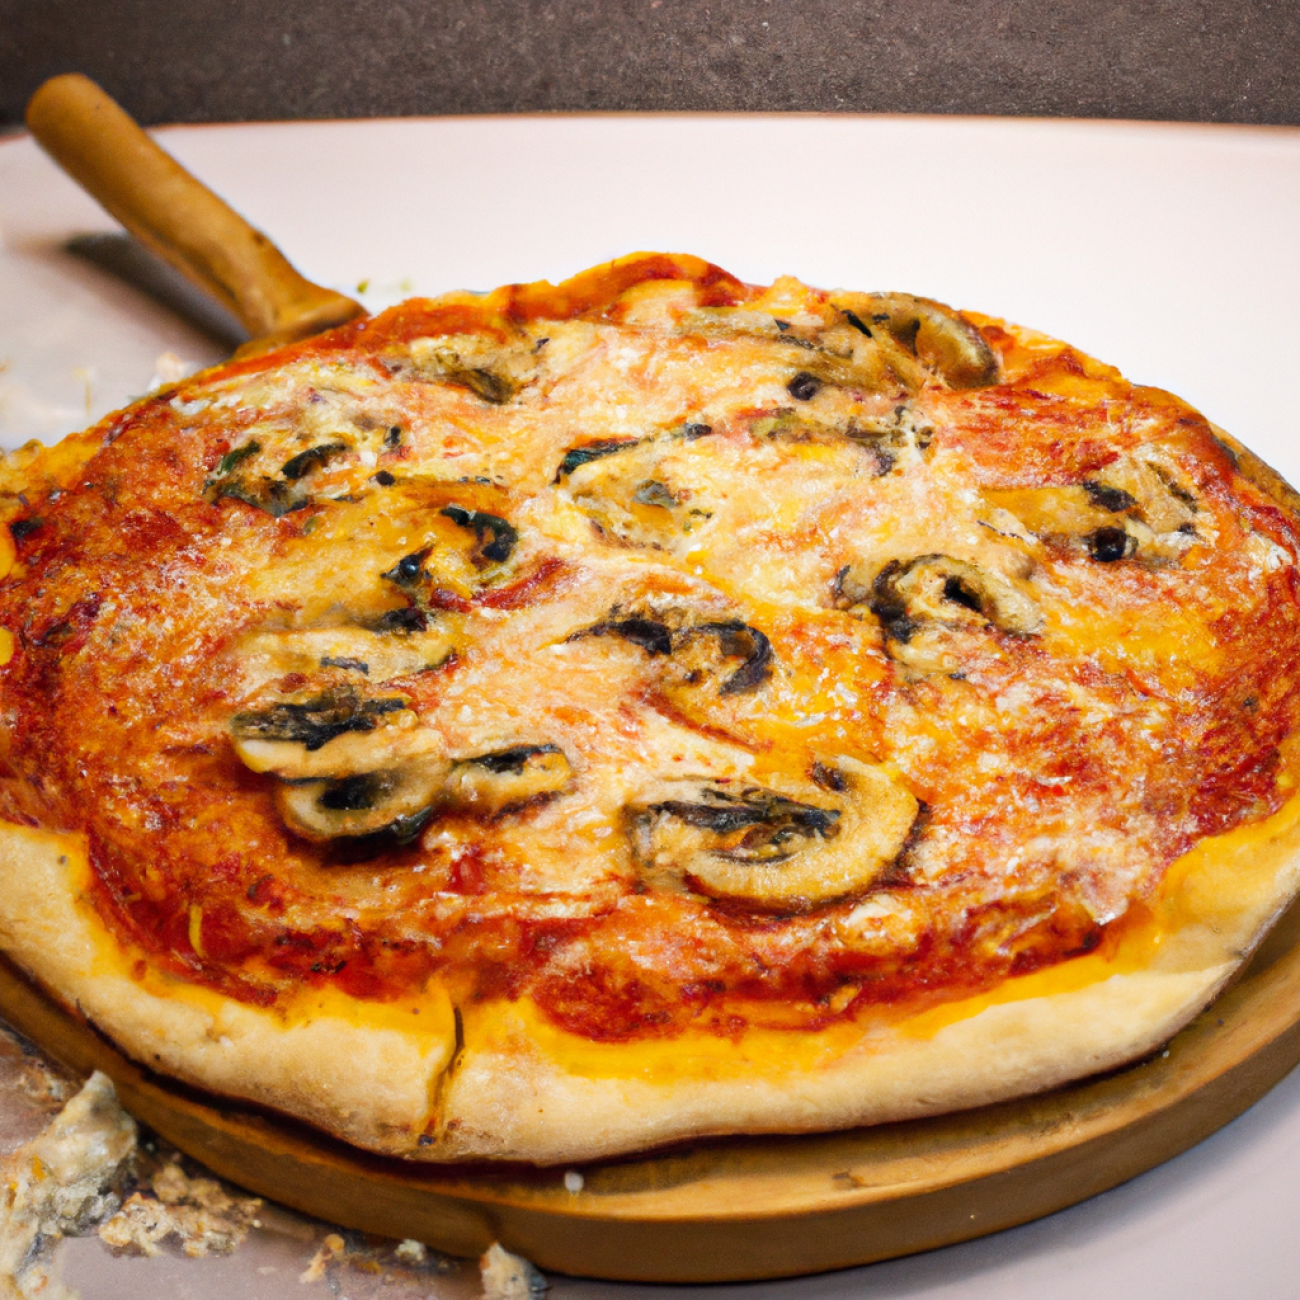 3. Pizza Nuova – Tradiční recepty se moderním ztvárněním